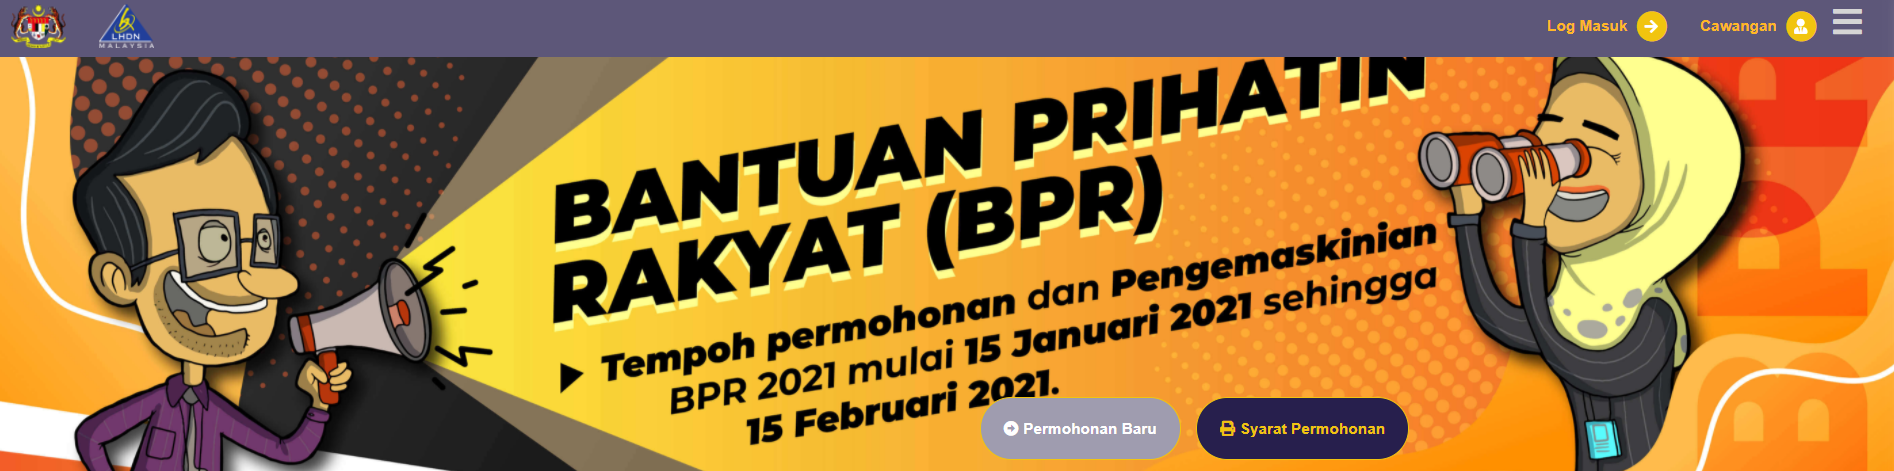 Permohonan Baru BPR Dibuka bermula 15 Januari Hingga15 Februari 2021 (tertakluk kepada perubahan) - Hasil 2